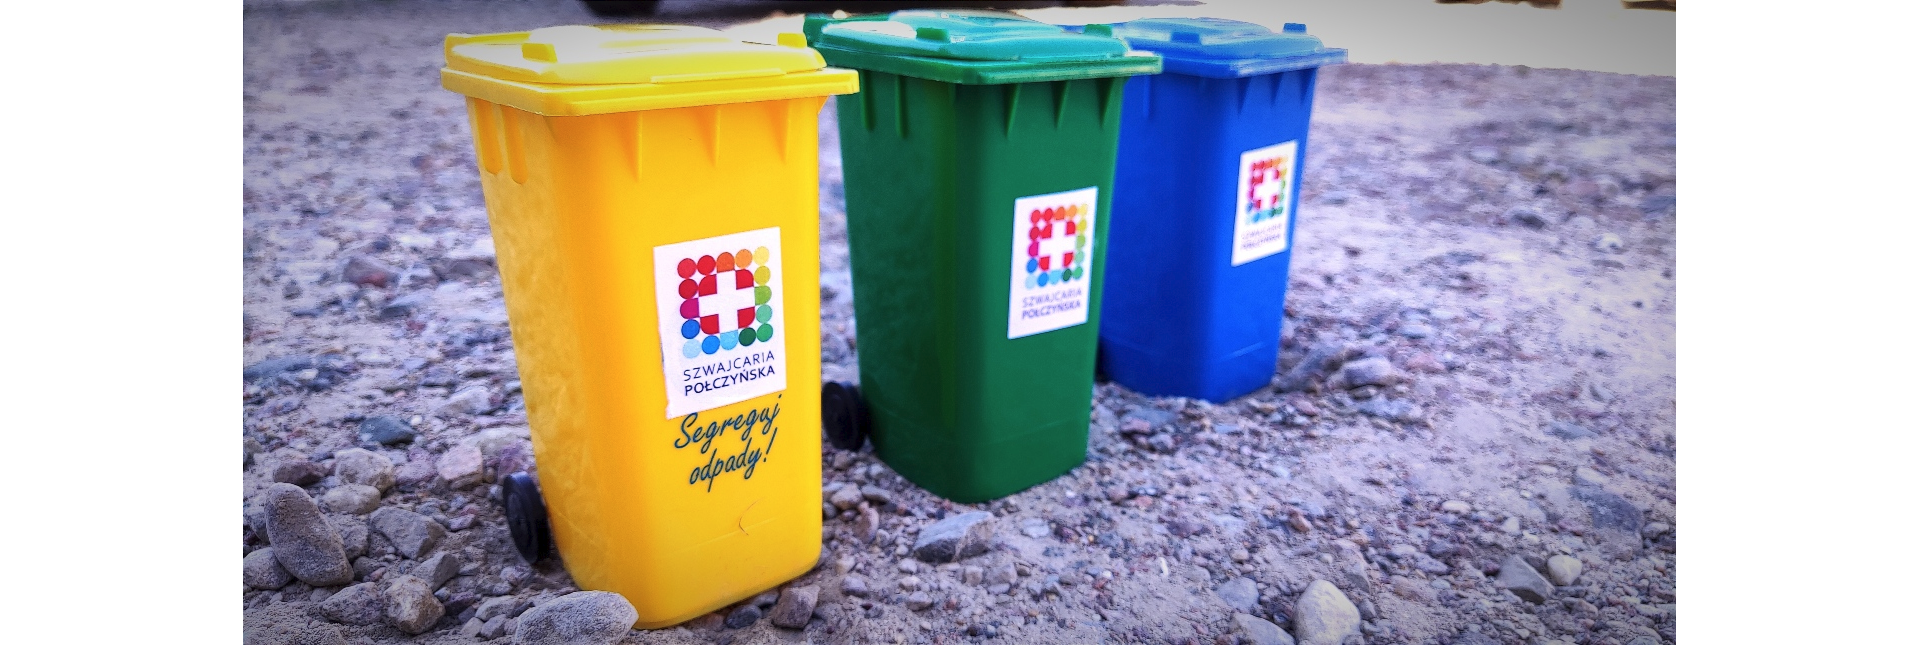 fotografia przedstawiająca trzy pojemniki do segregacji odpadów